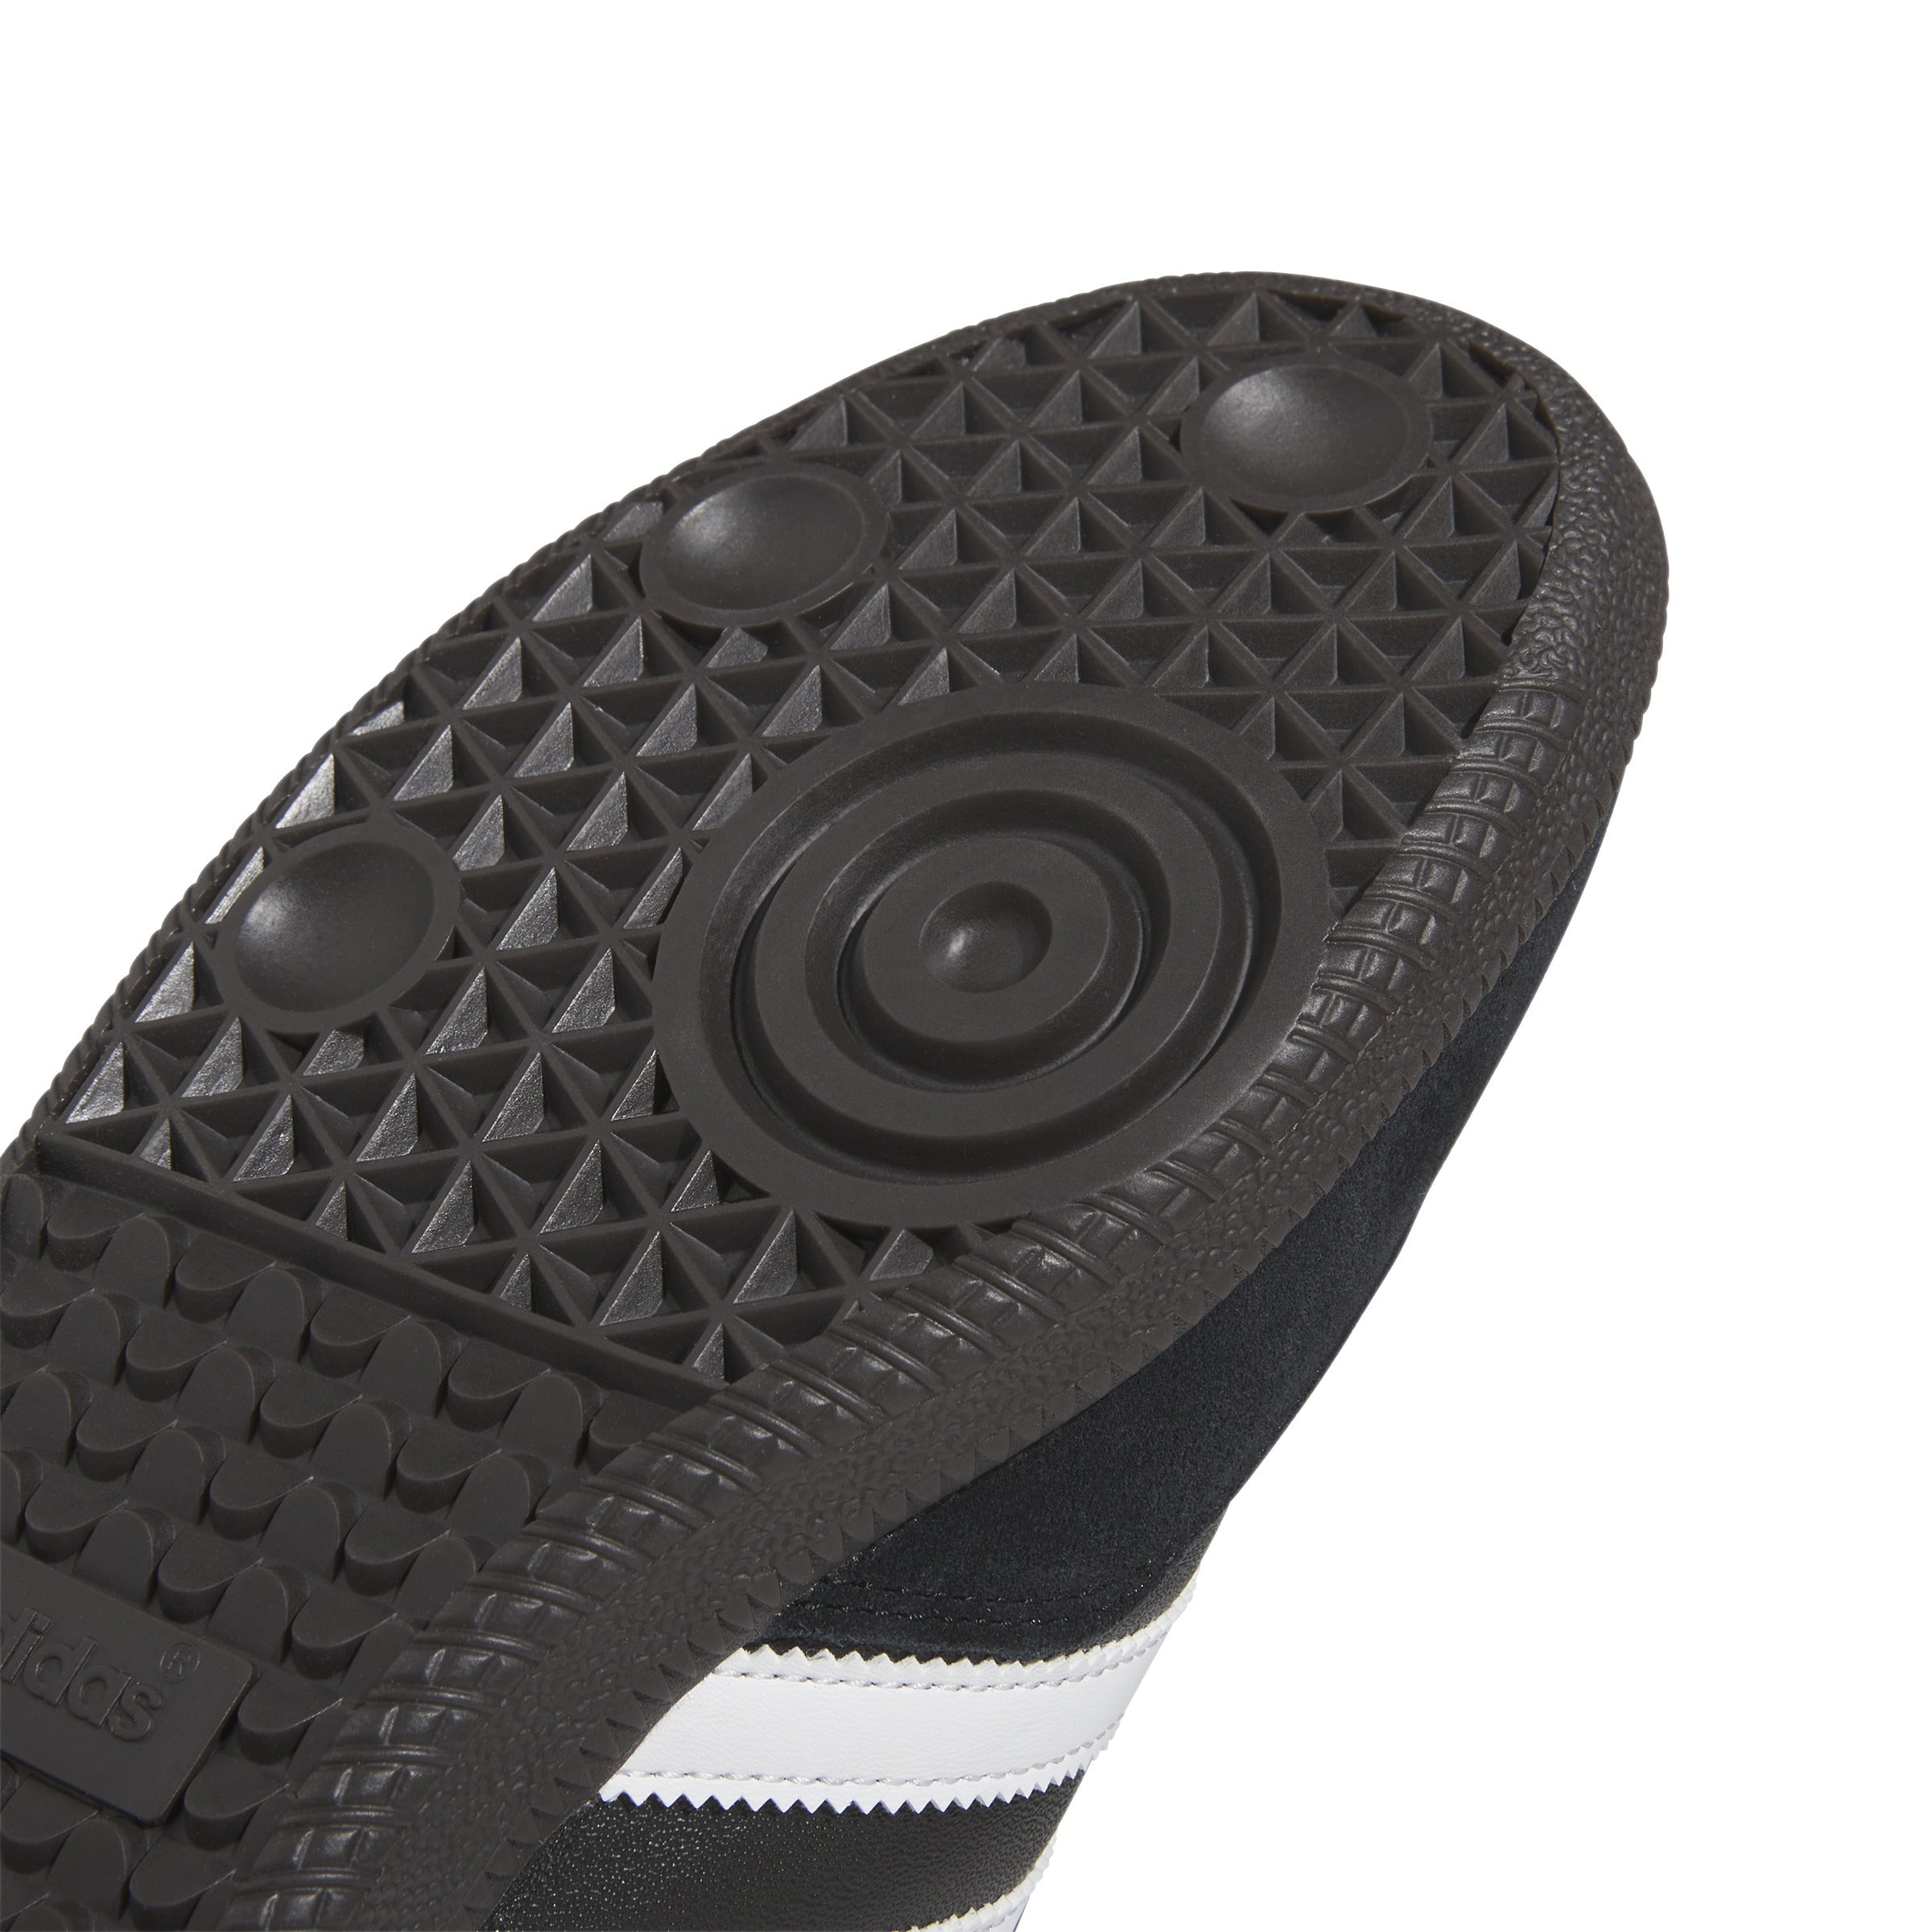 adidas Samba Leather Indoor Shoes Black